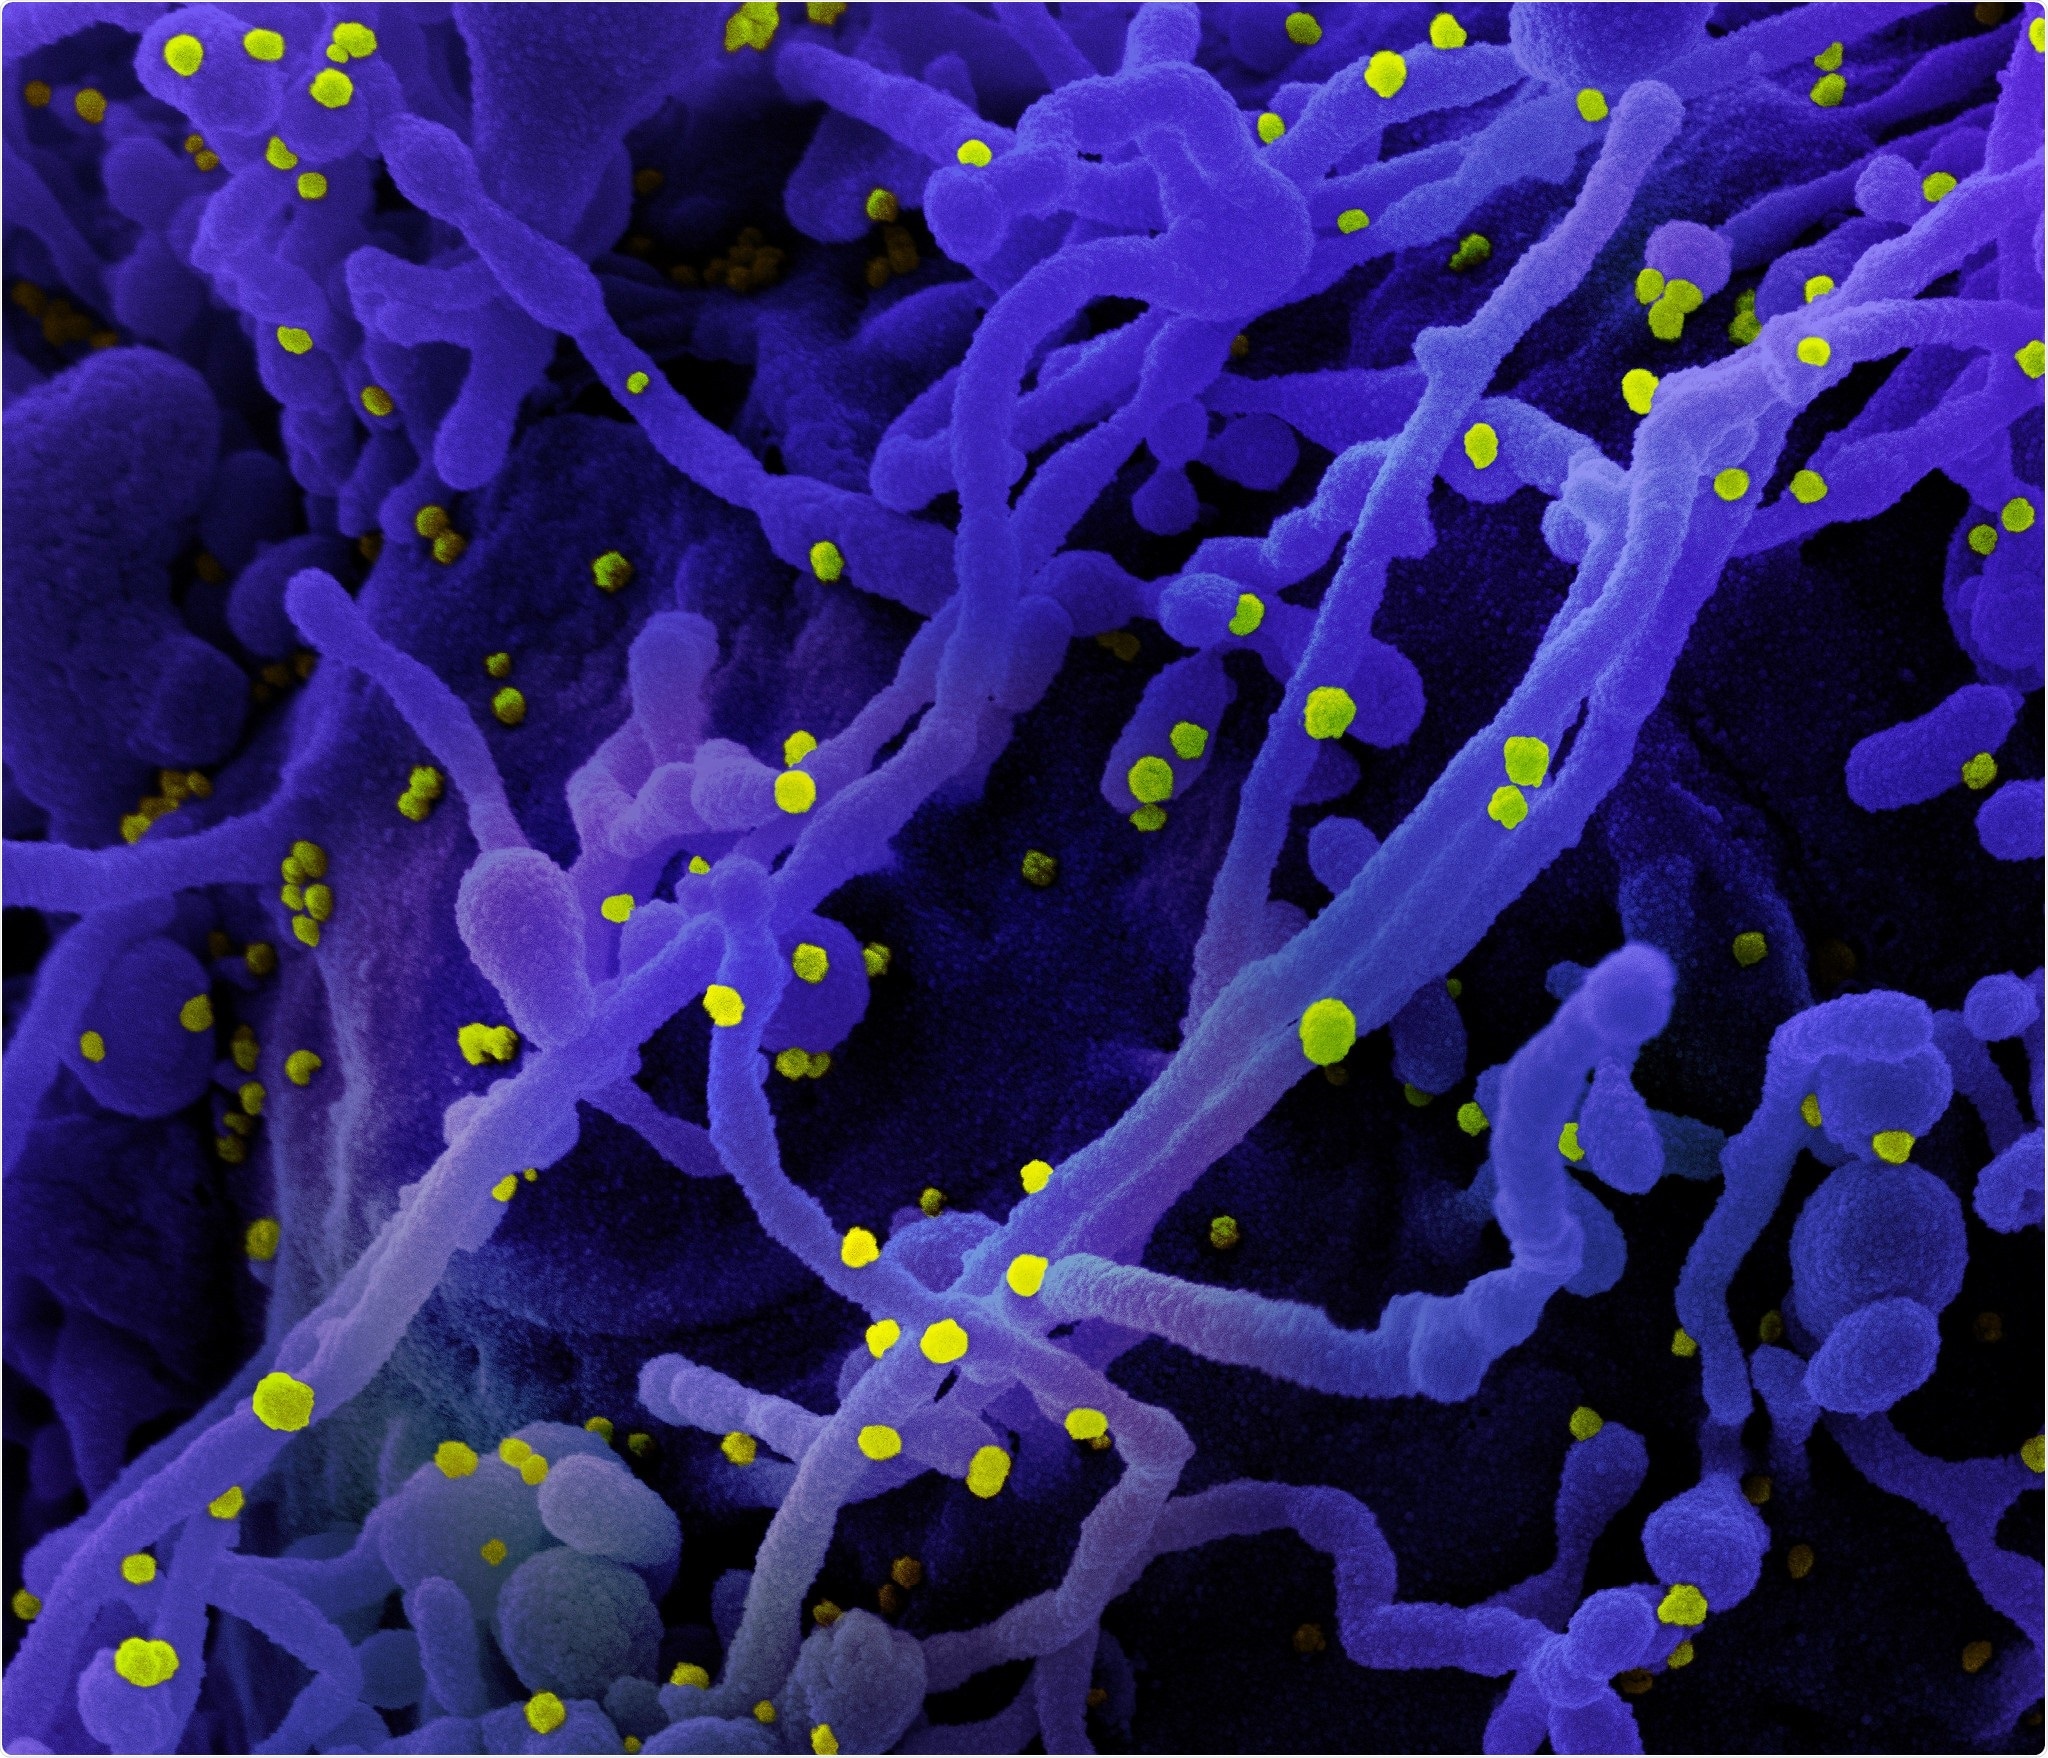 Micrográfo de electrón nuevo de la exploración de Coronavirus SARS-CoV-2 Colorized de una célula (púrpura) infectada con las partículas del virus SARS-COV-2 (amarillo), aisladas de una muestra paciente. La imagen capturada en el NIAID integró el centro de investigación en el fuerte Detrick, Maryland. Haber: NIAID